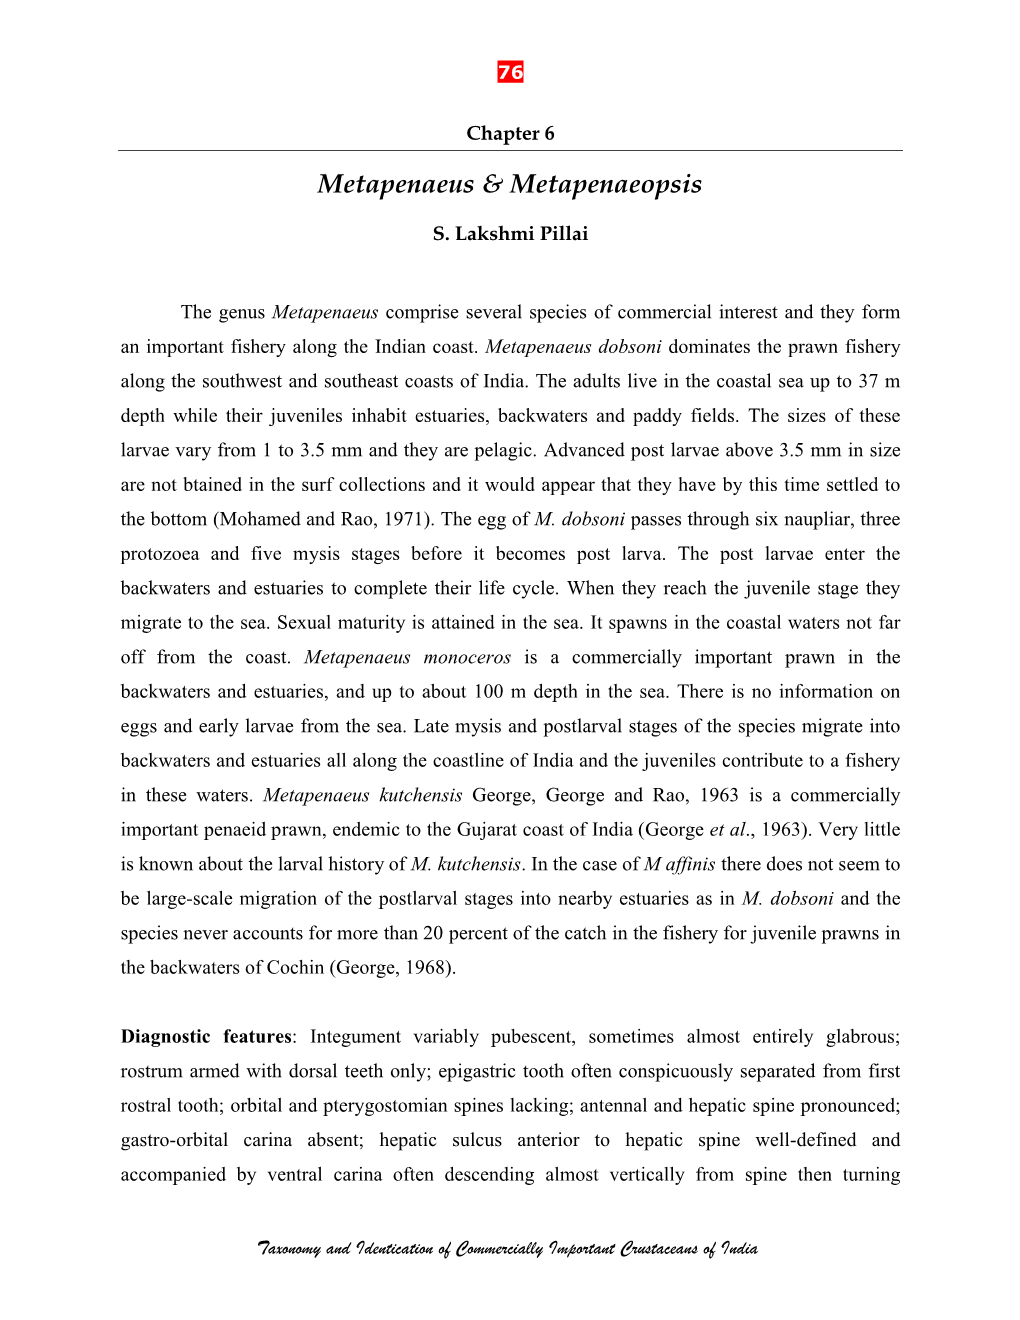 Metapenaeus & Metapenaeopsis